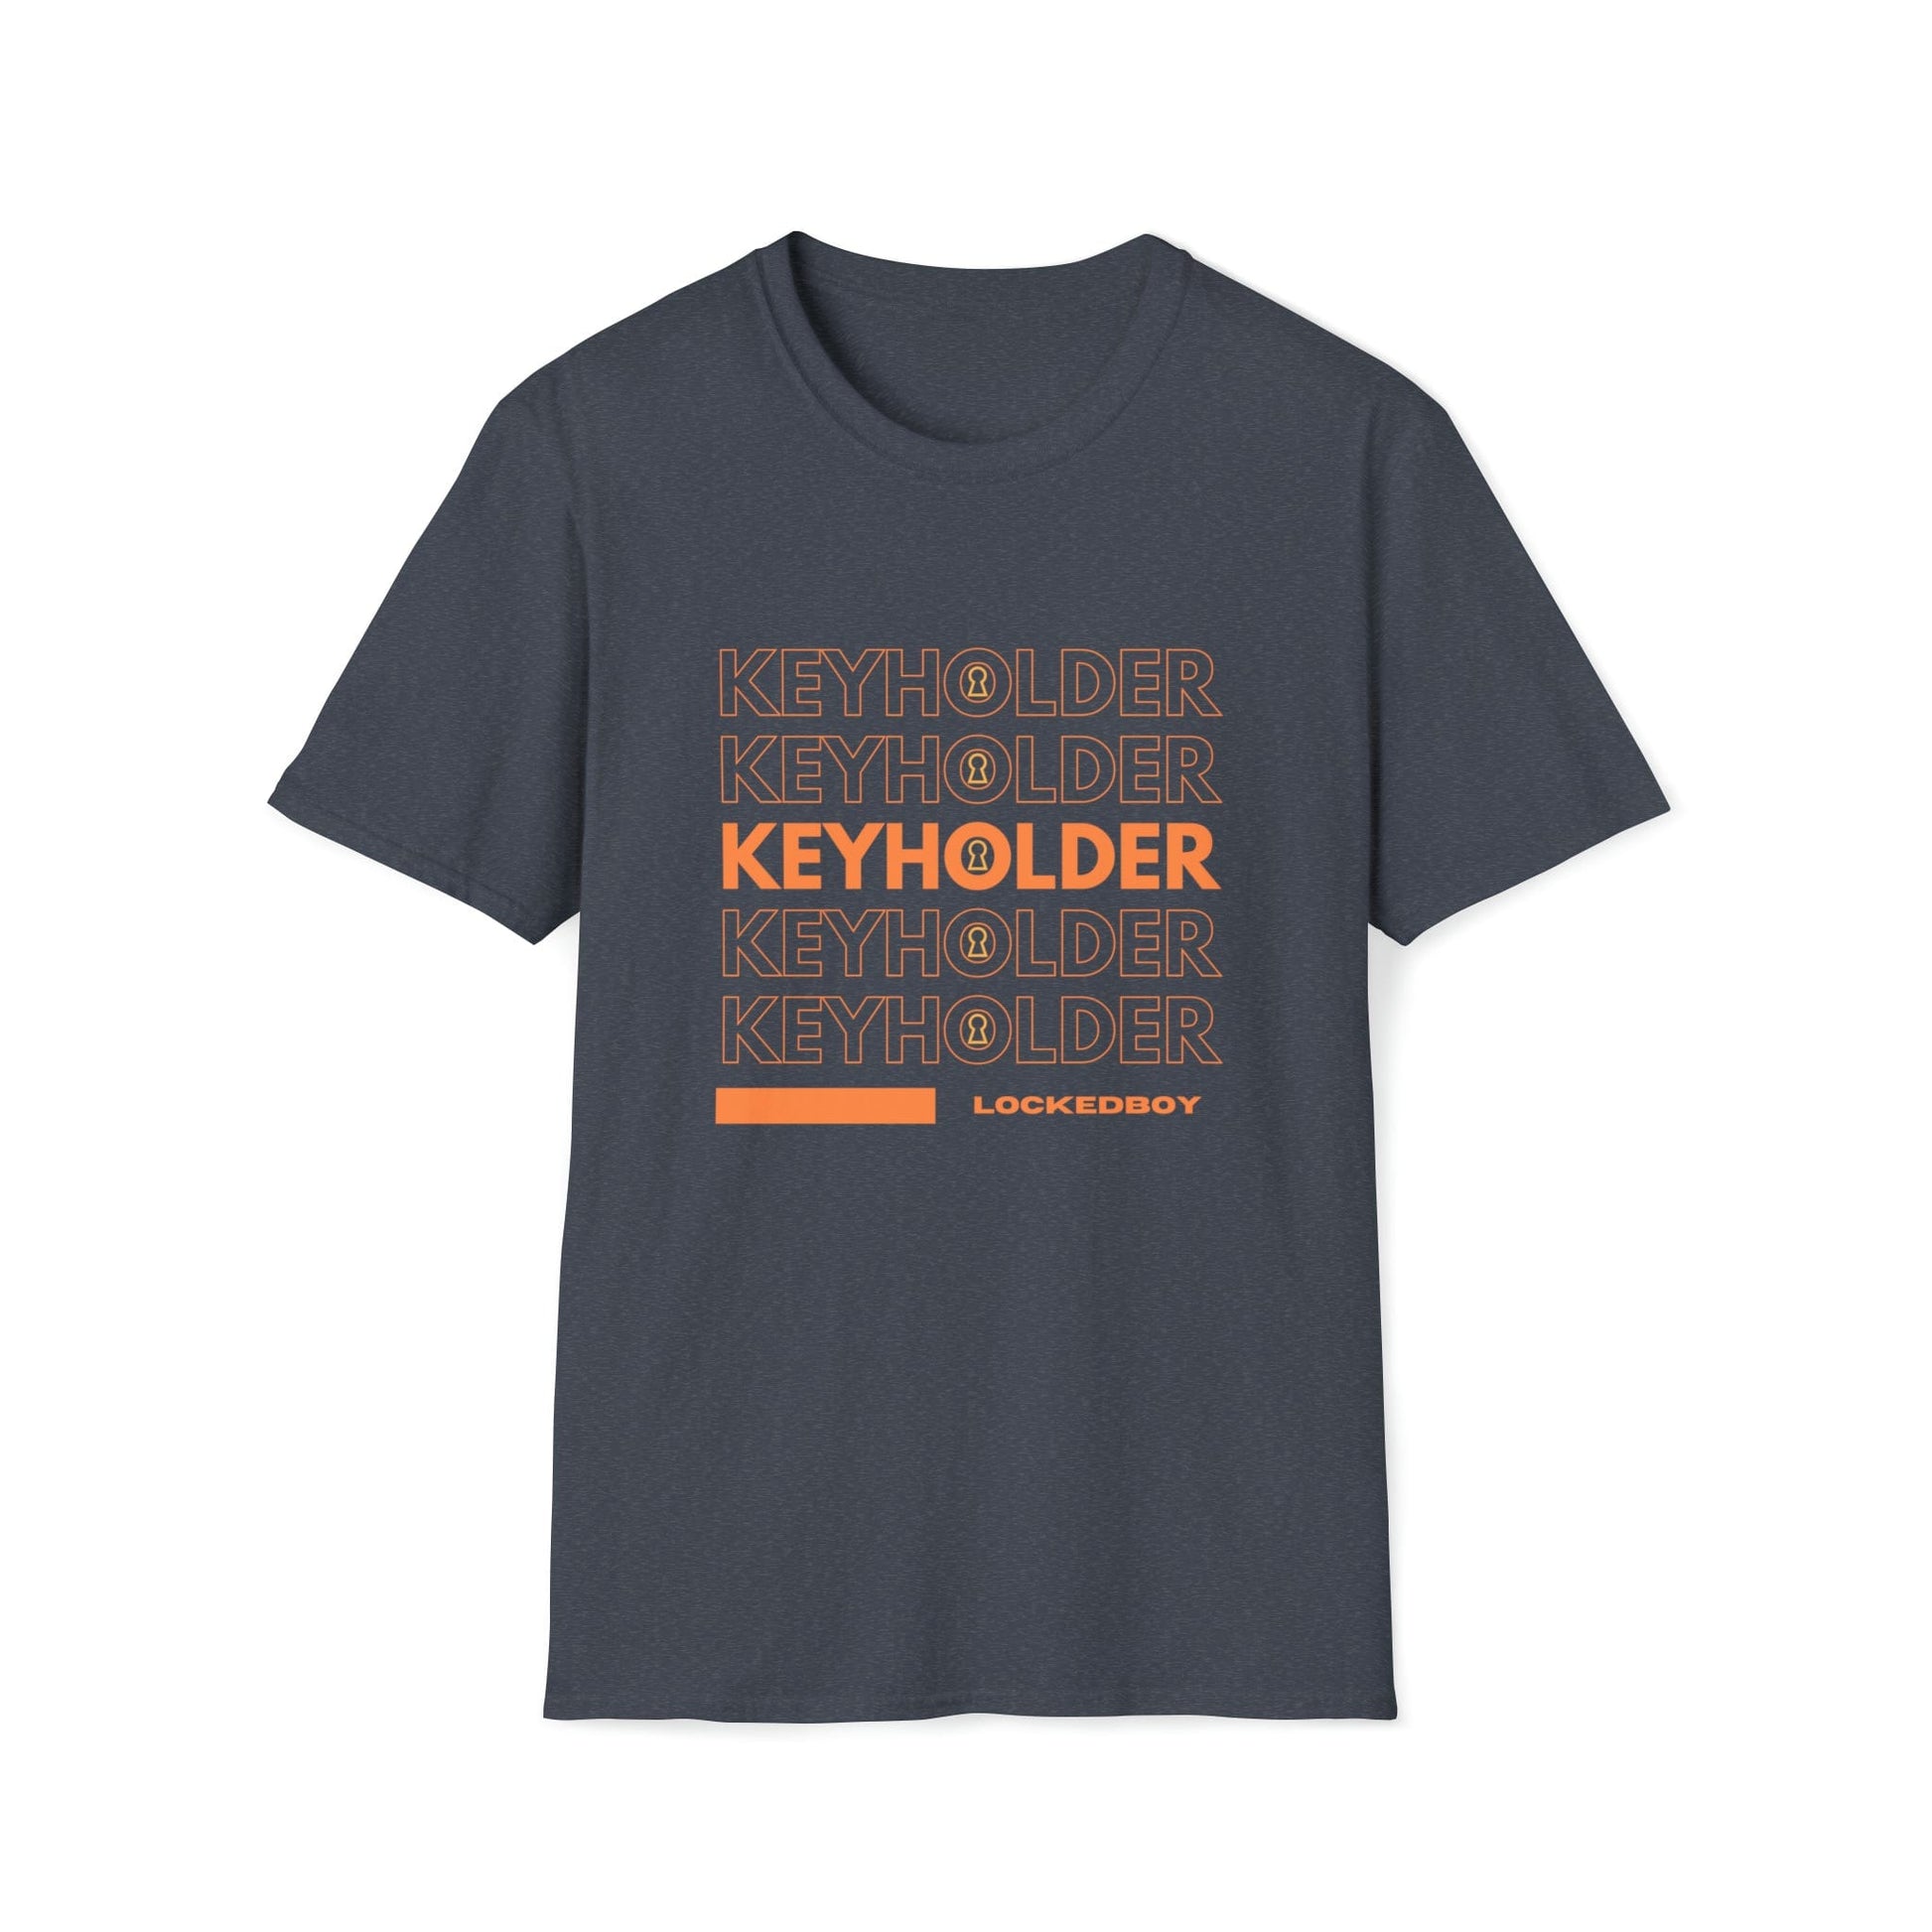 T-Shirt Heather Navy / S KEYHOLDER bag Inspo - Chastity Shirts by LockedBoy Athletic LEATHERDADDY BATOR